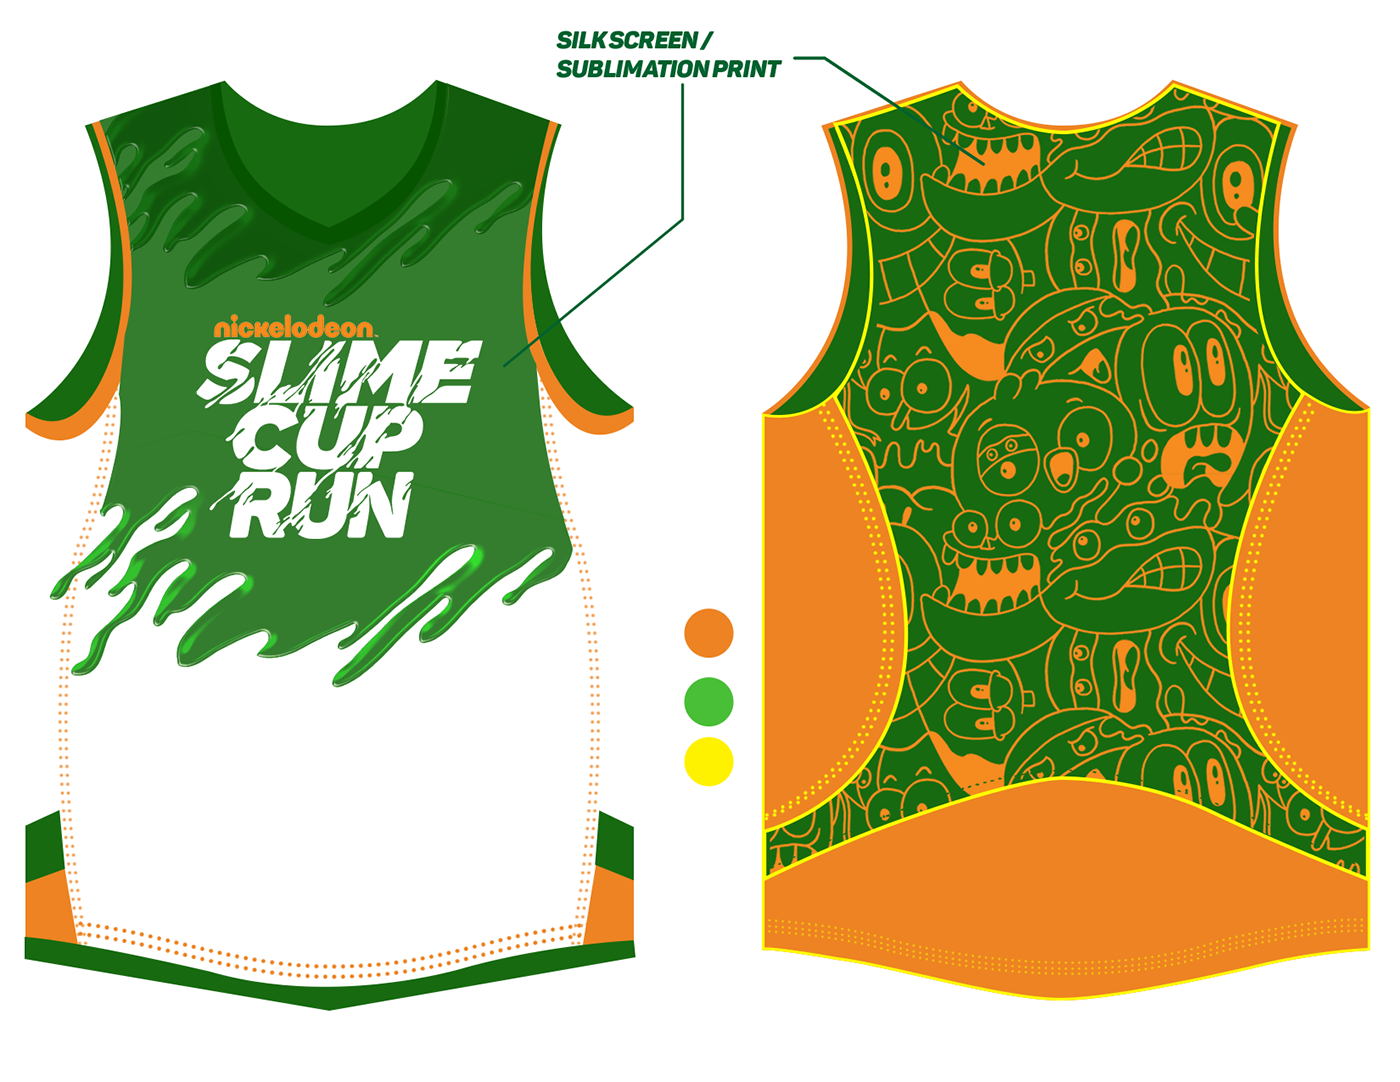 Event nickelodeon slime cup run slime cup philippines run fun run